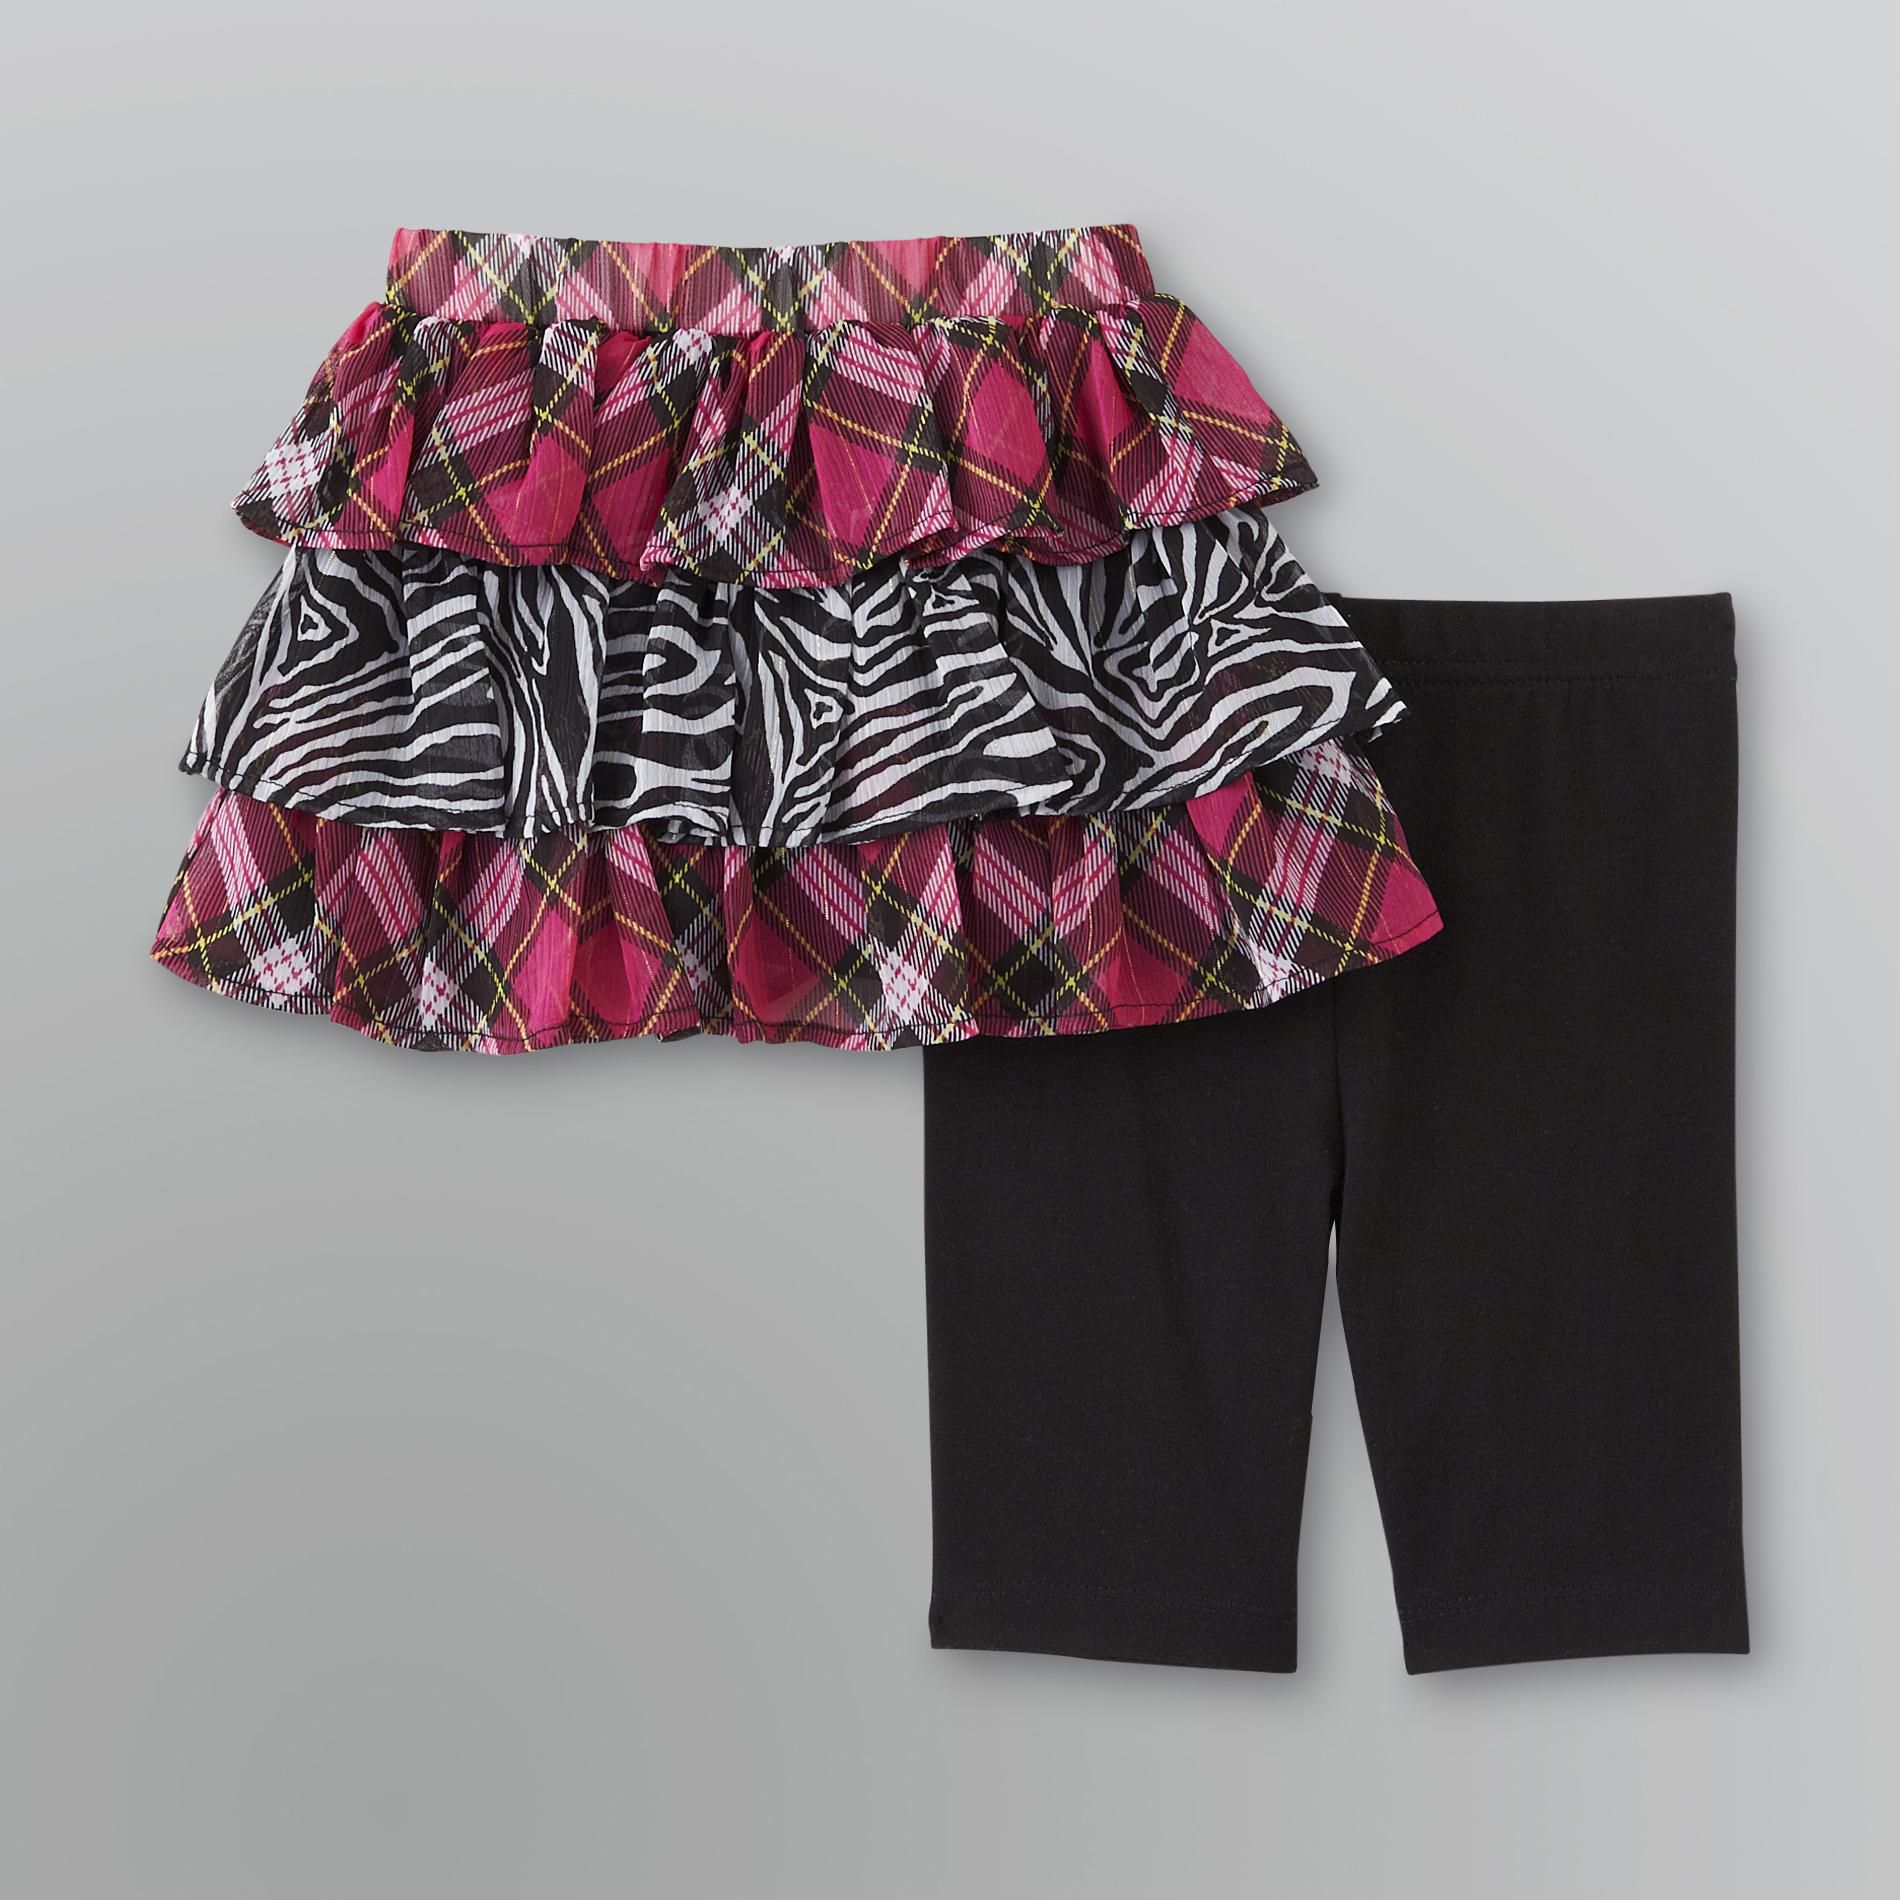 Piper Baby Infant & Toddler Girl's Ruffled Skirt and Leggings Set